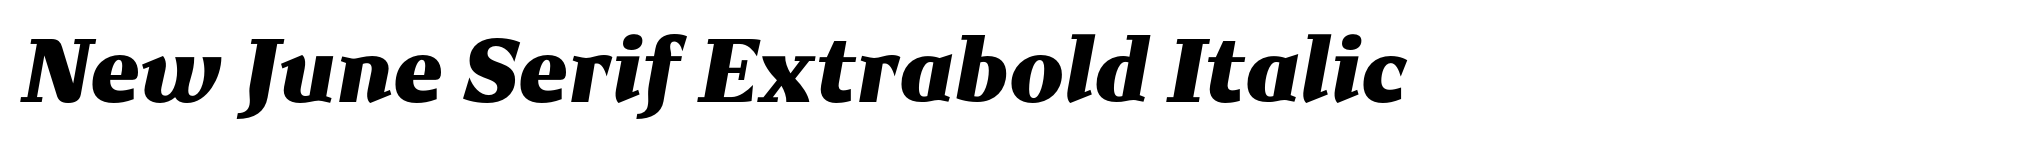 New June Serif Extrabold Italic image